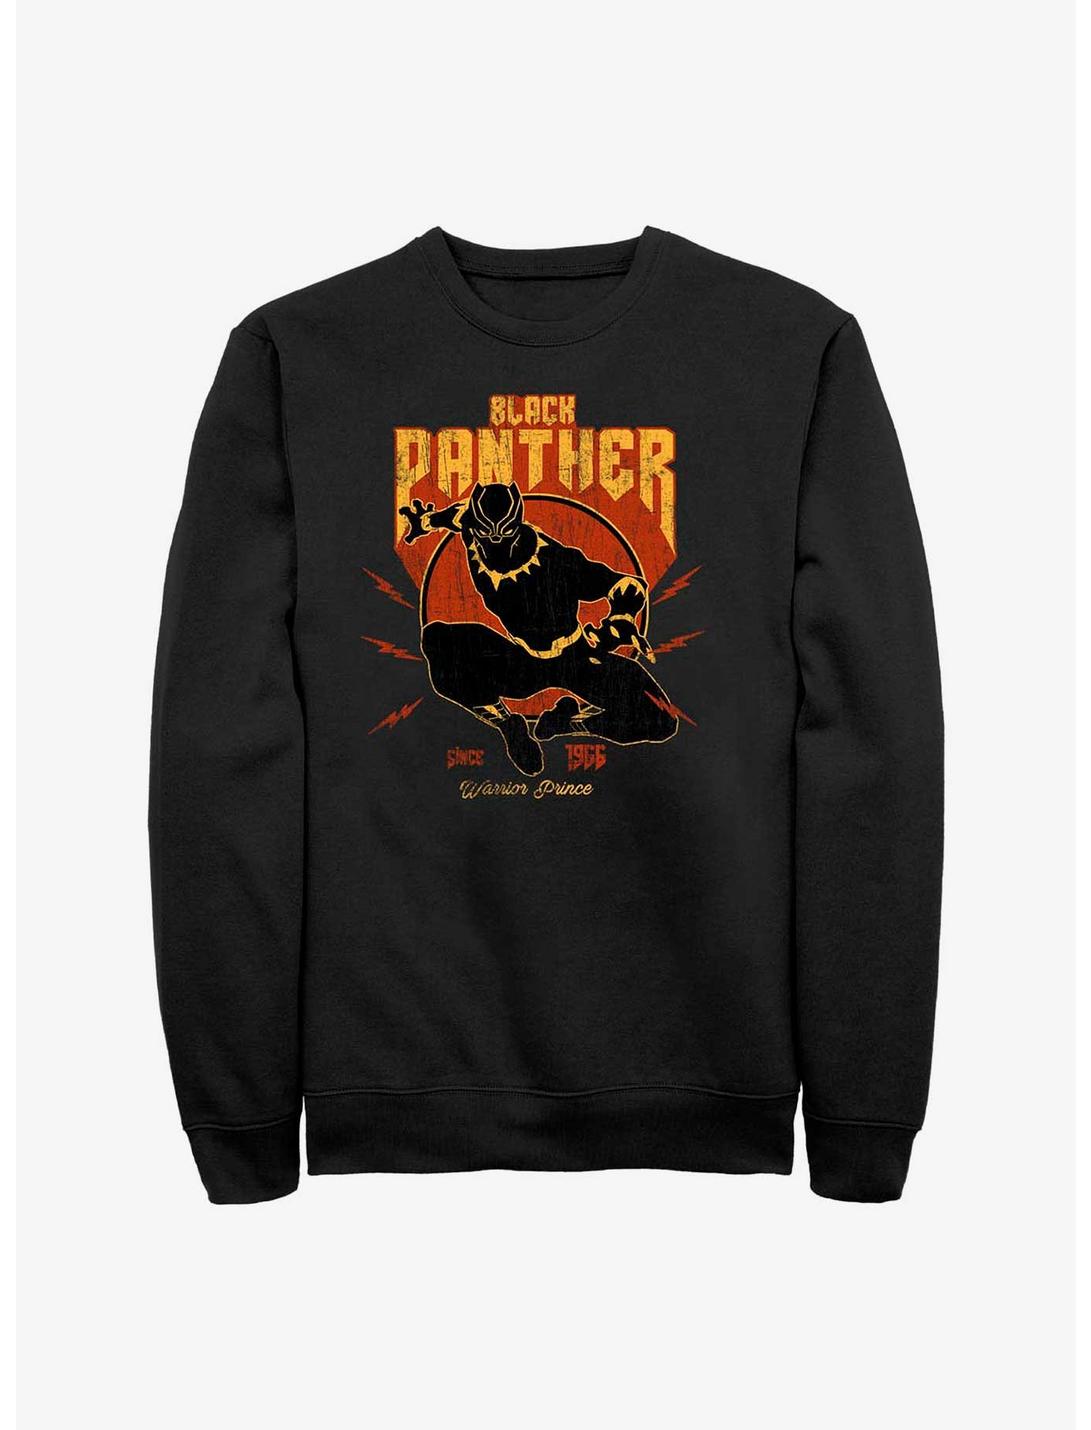 Marvel Black Panther Warrior Prince Since 1966 Sweatshirt, BLACK, hi-res